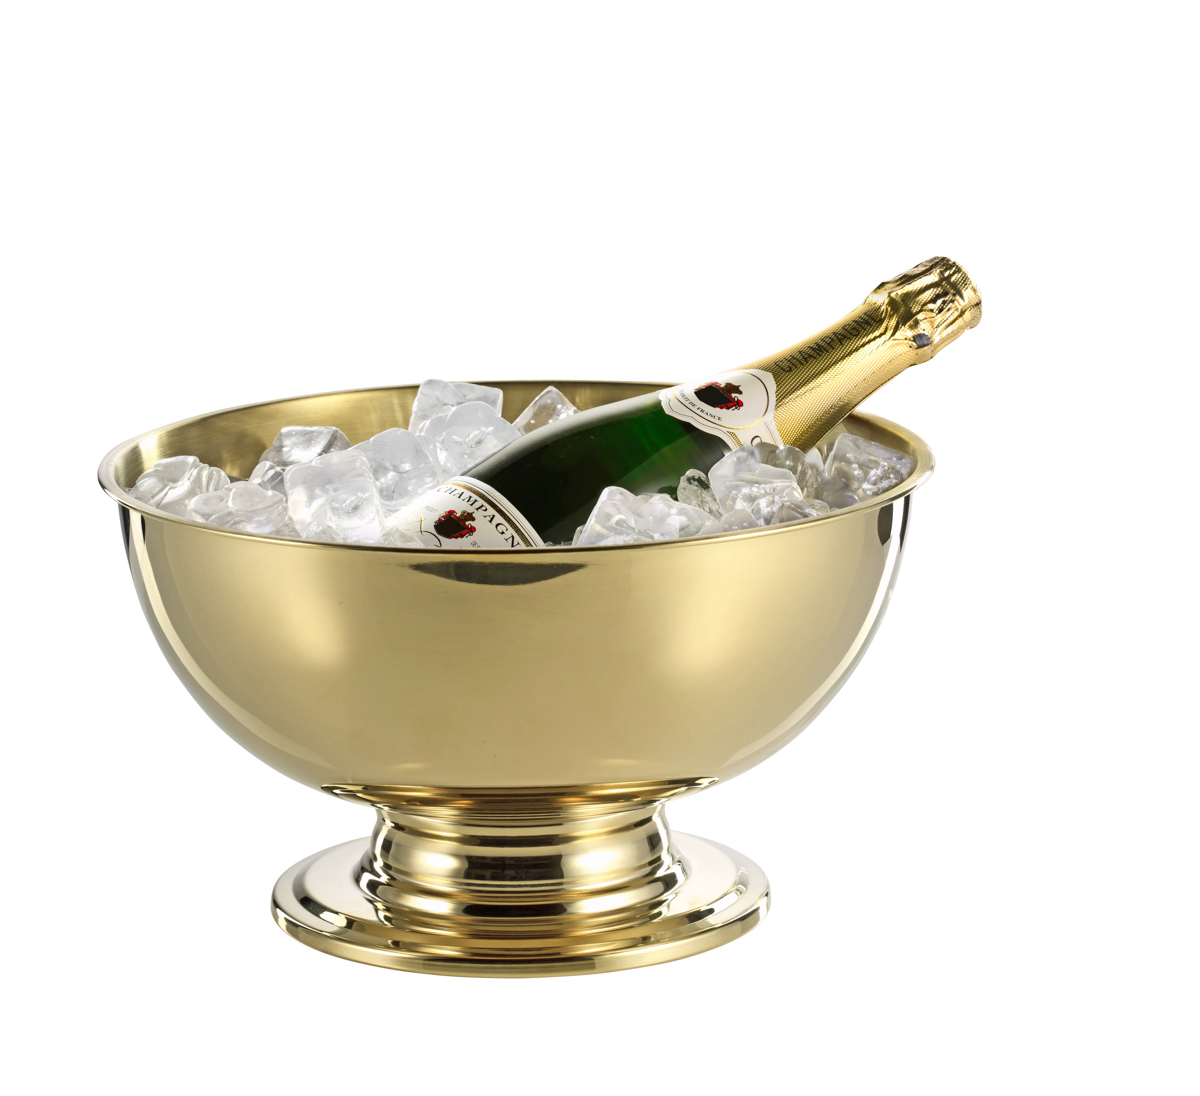 Champagner-Kühler PORTLAND, Edelstahl, 5 ltr., mit champagnerfarbener PVD-Beschichtung